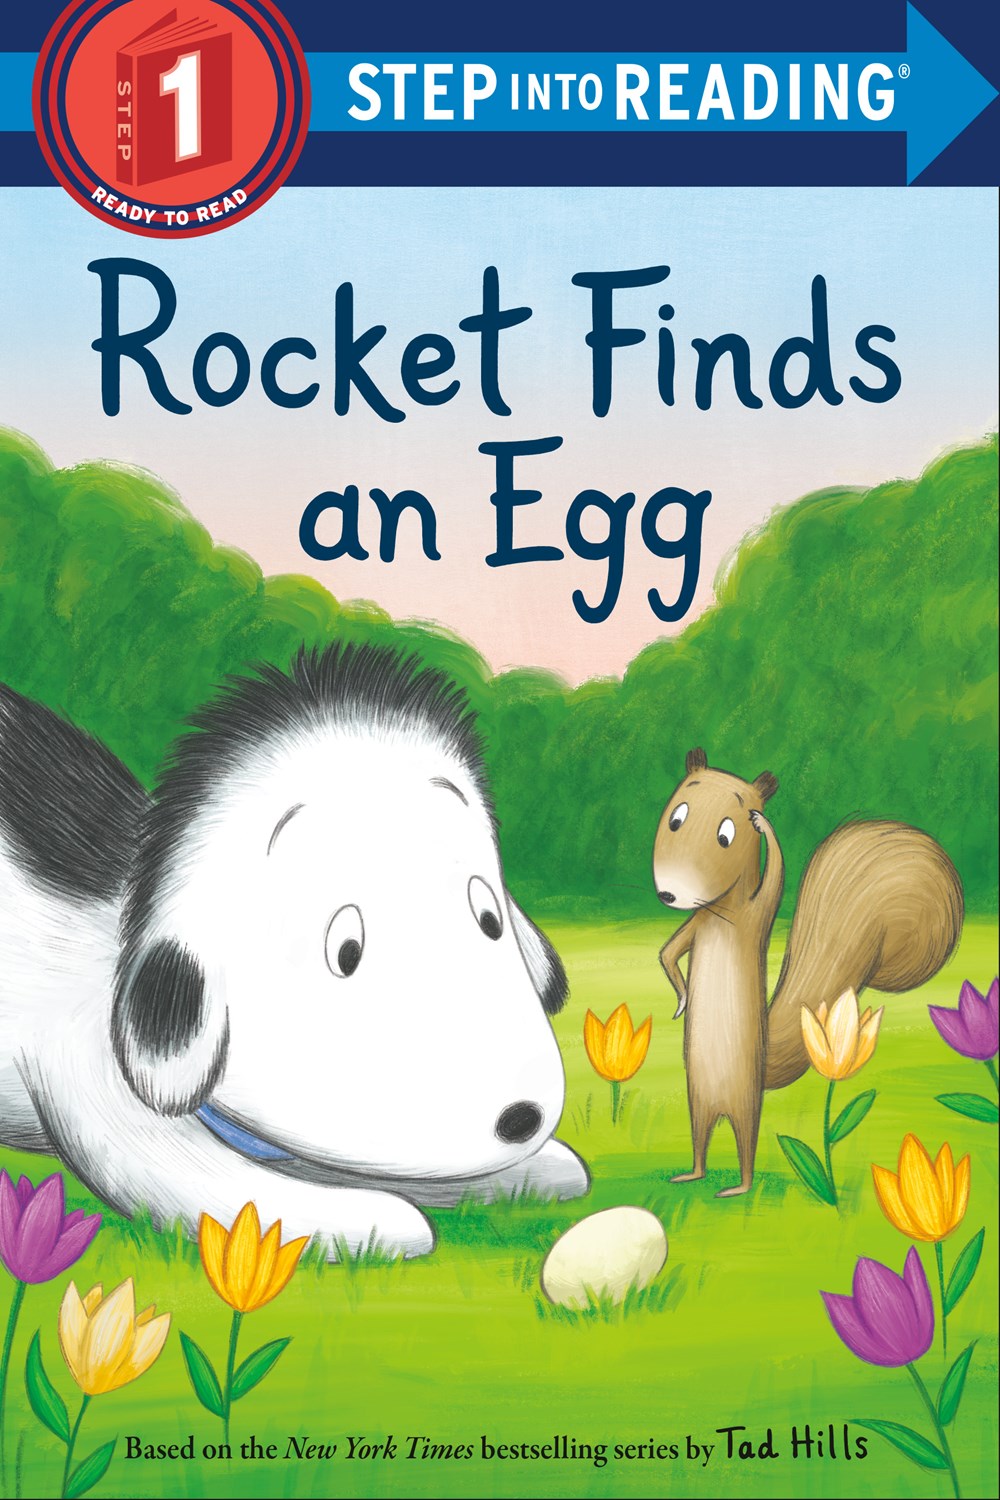 SIR(Step1):Rocket Finds an Egg